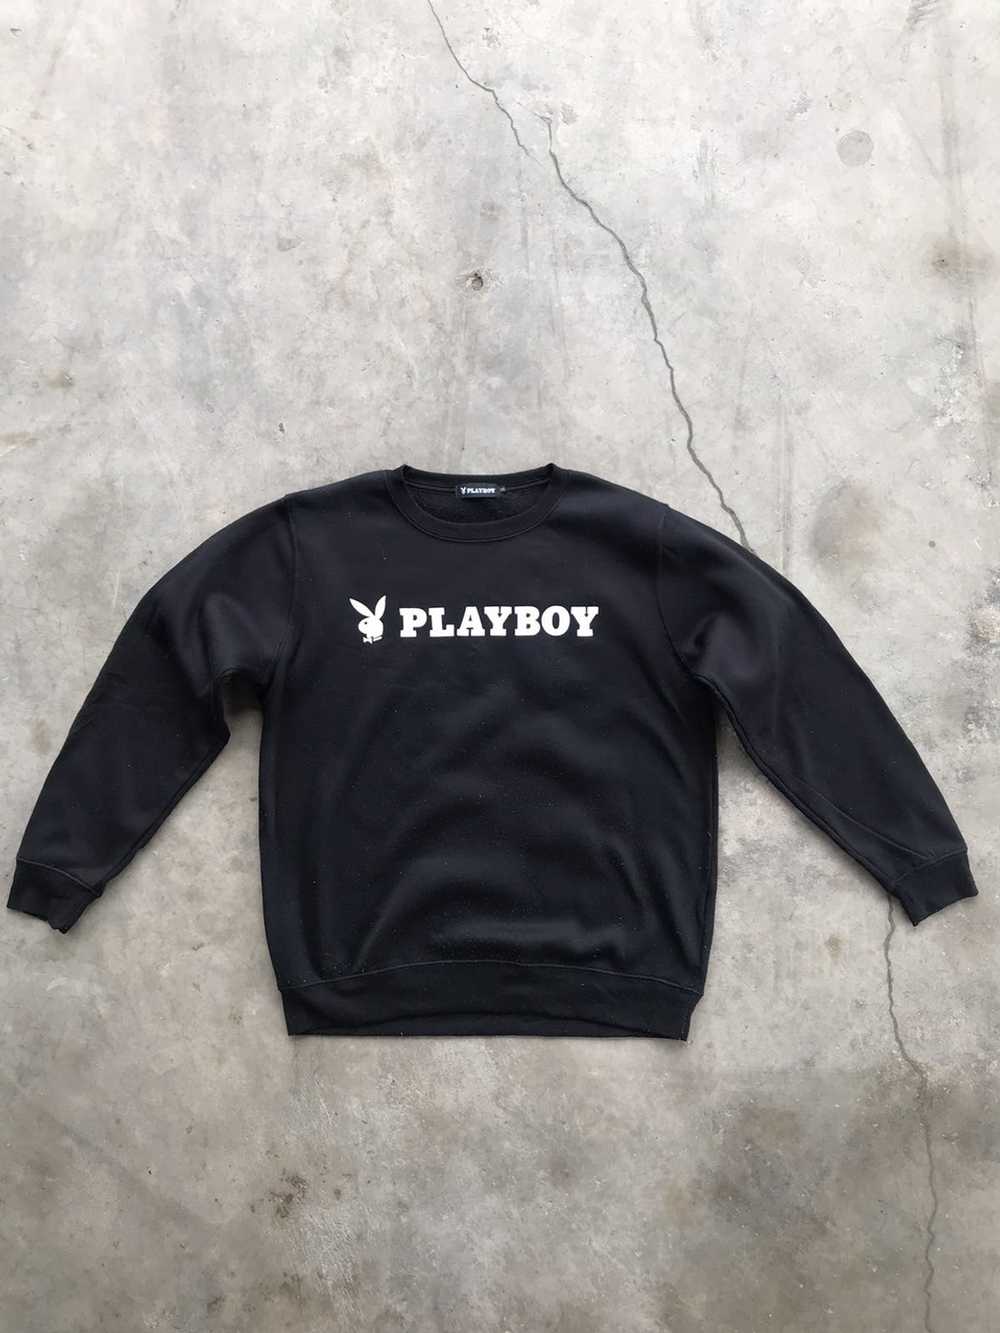 Playboy Playboy sweatshirts logo - image 1